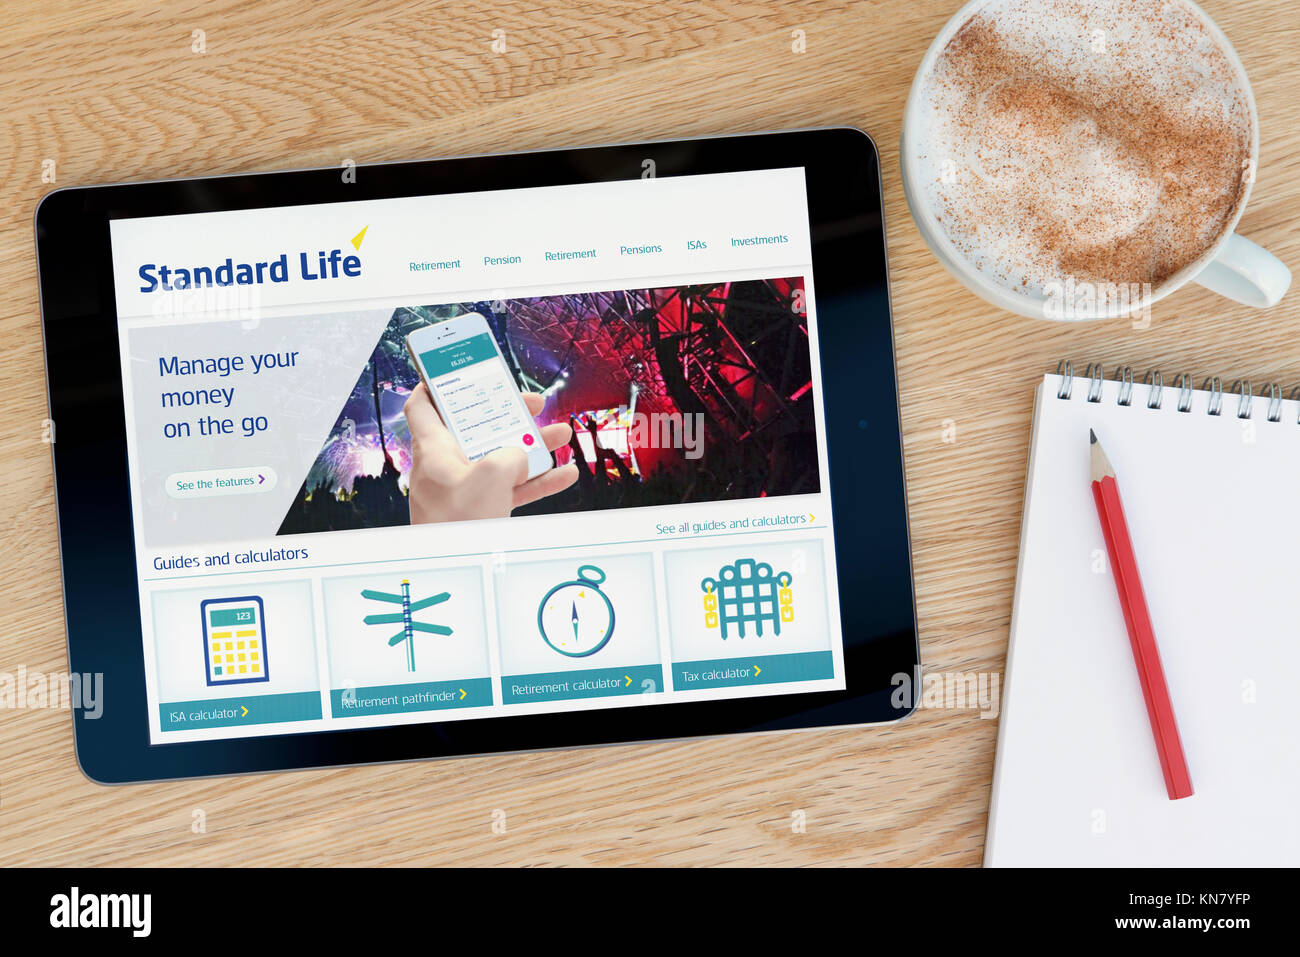 Le site web de la Standard Life sur un iPad tablet device qui repose sur une table en bois à côté d'un bloc-notes et un crayon et une tasse de café (rédaction uniquement) Banque D'Images